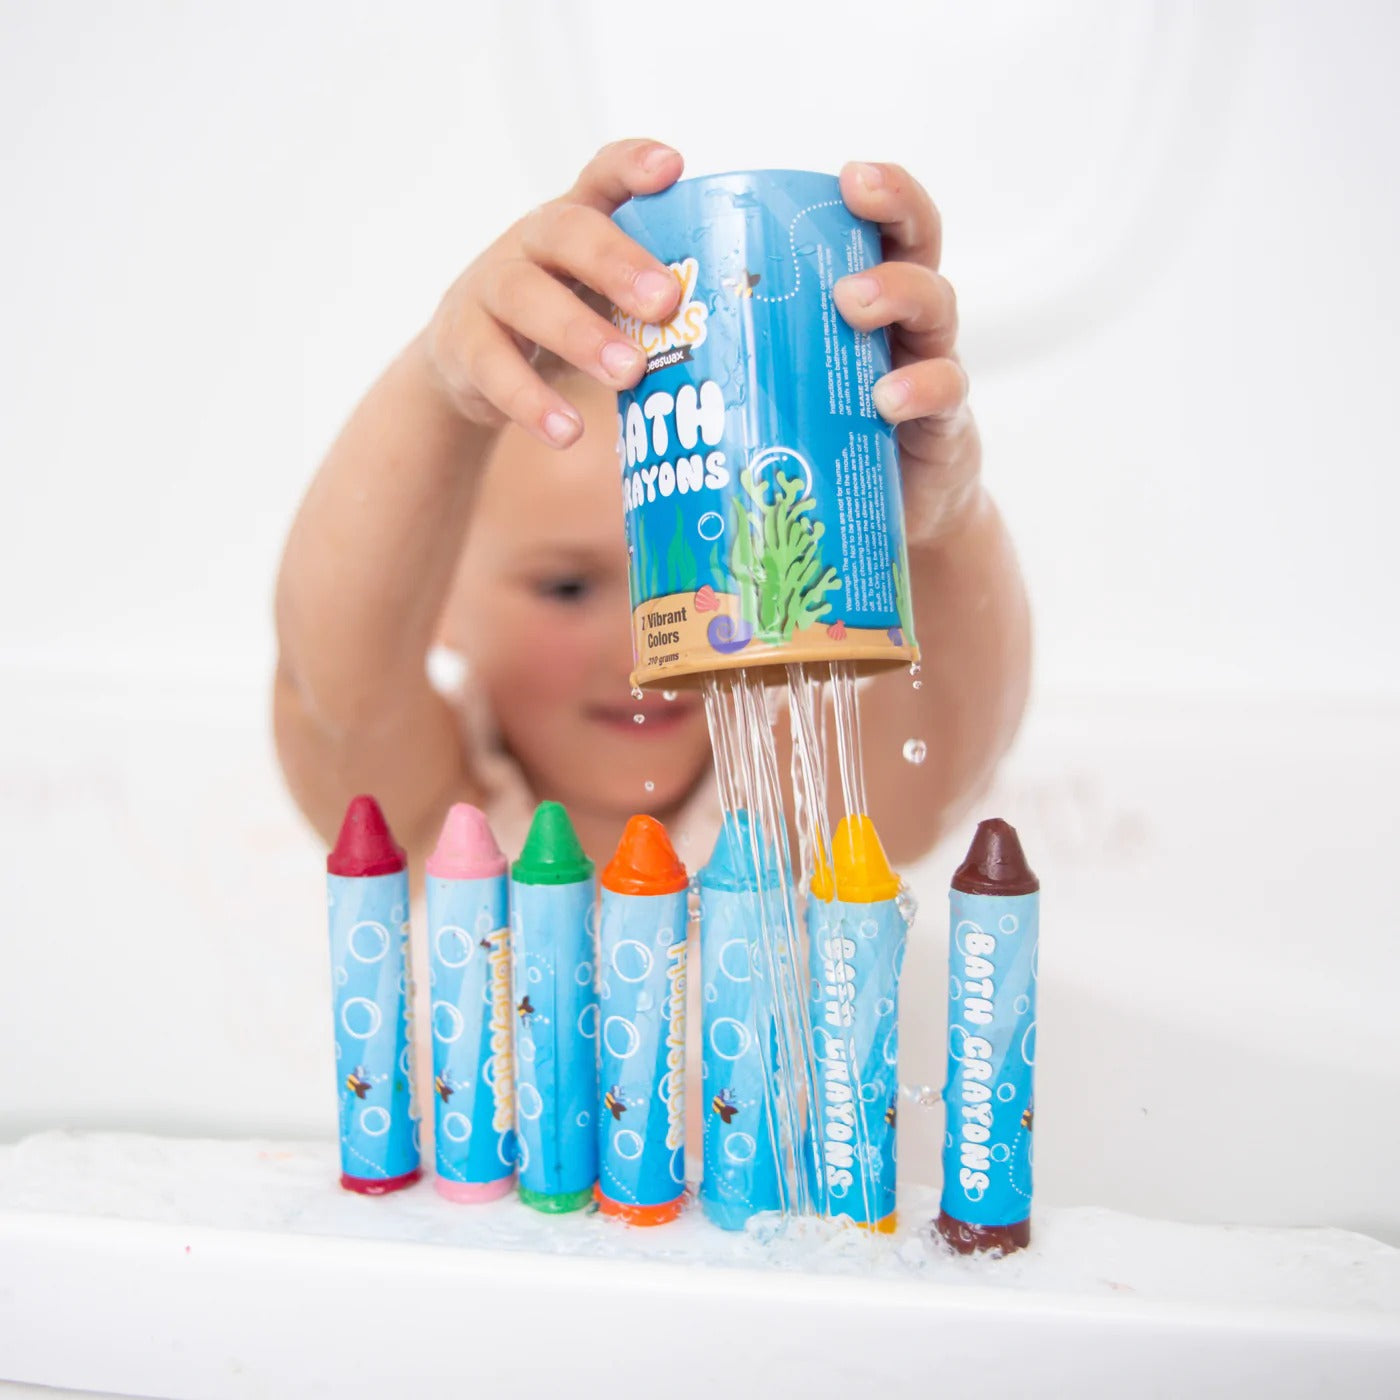 Honeysticks Bath Crayons, Natural Soy & Beeswax Bath Toys available at Bear & Moo